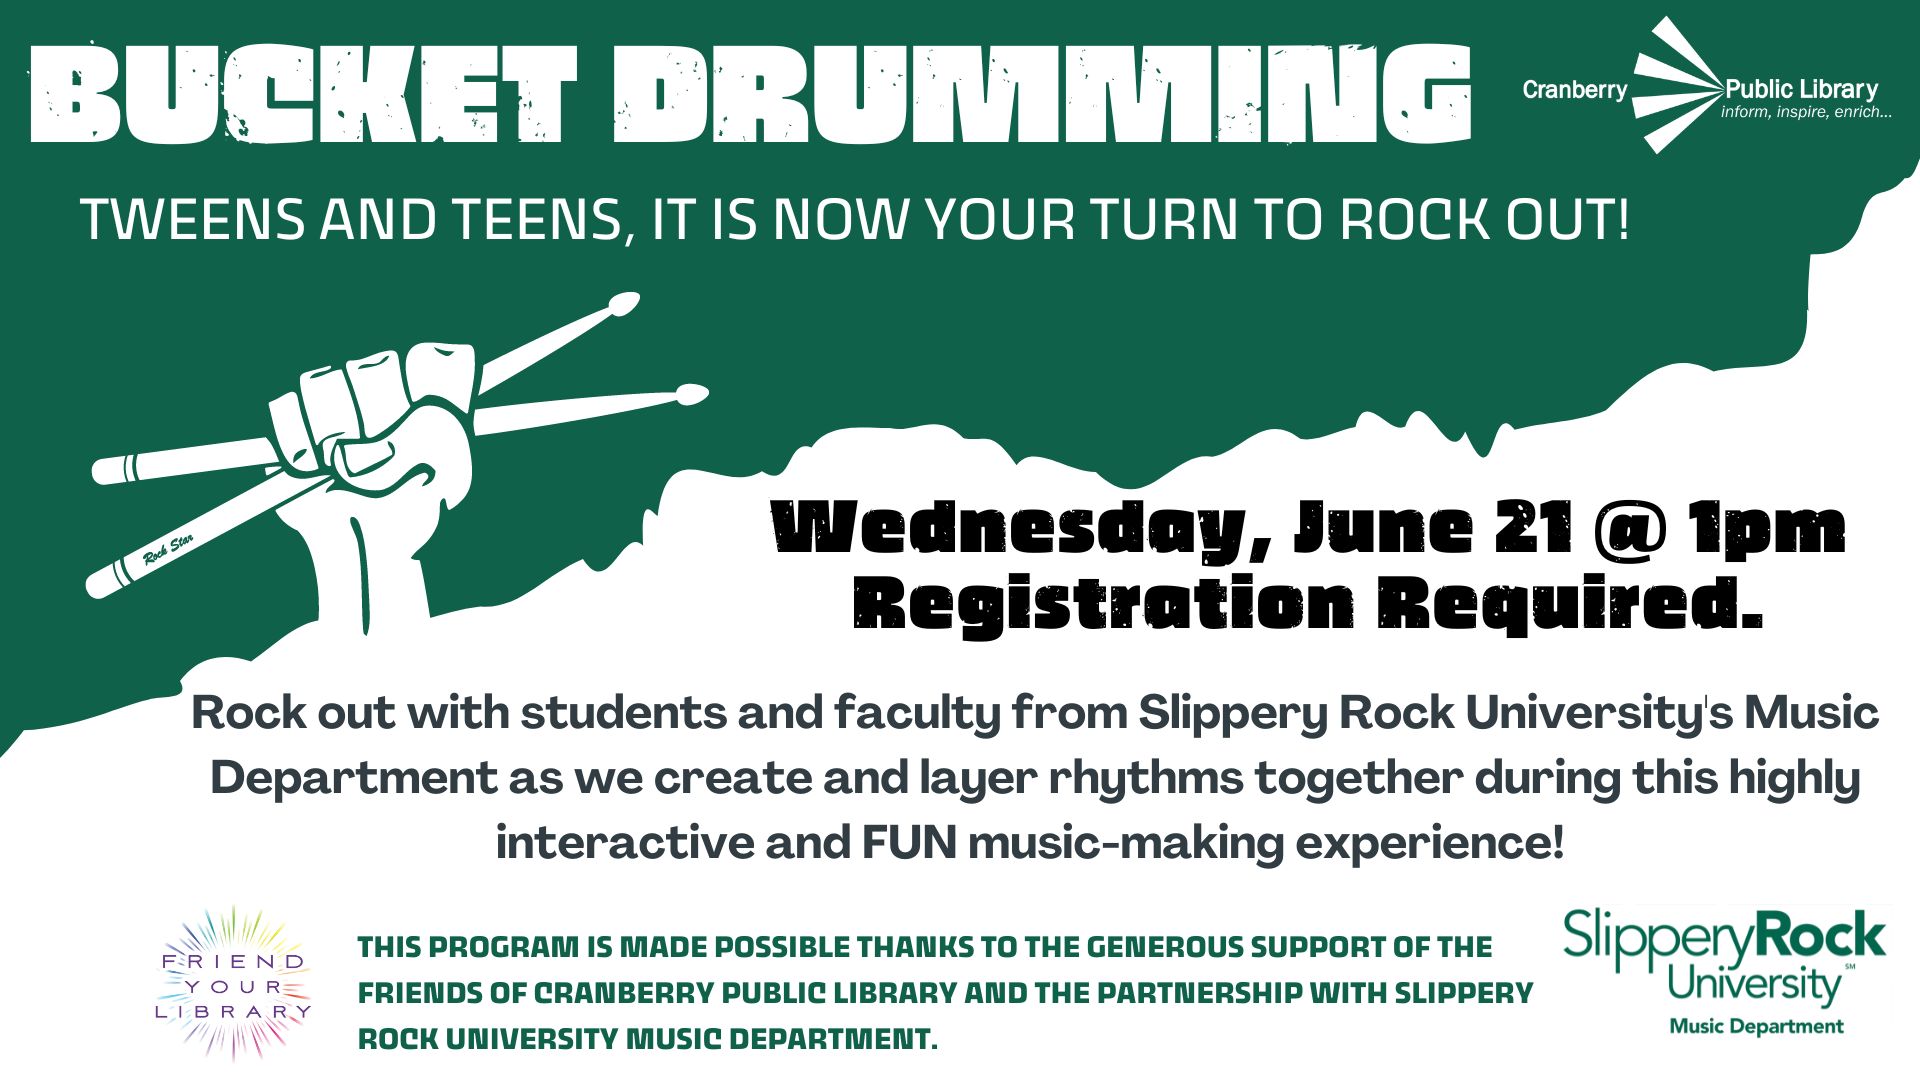 Flyer for Tween/Teen Bucket Drumming